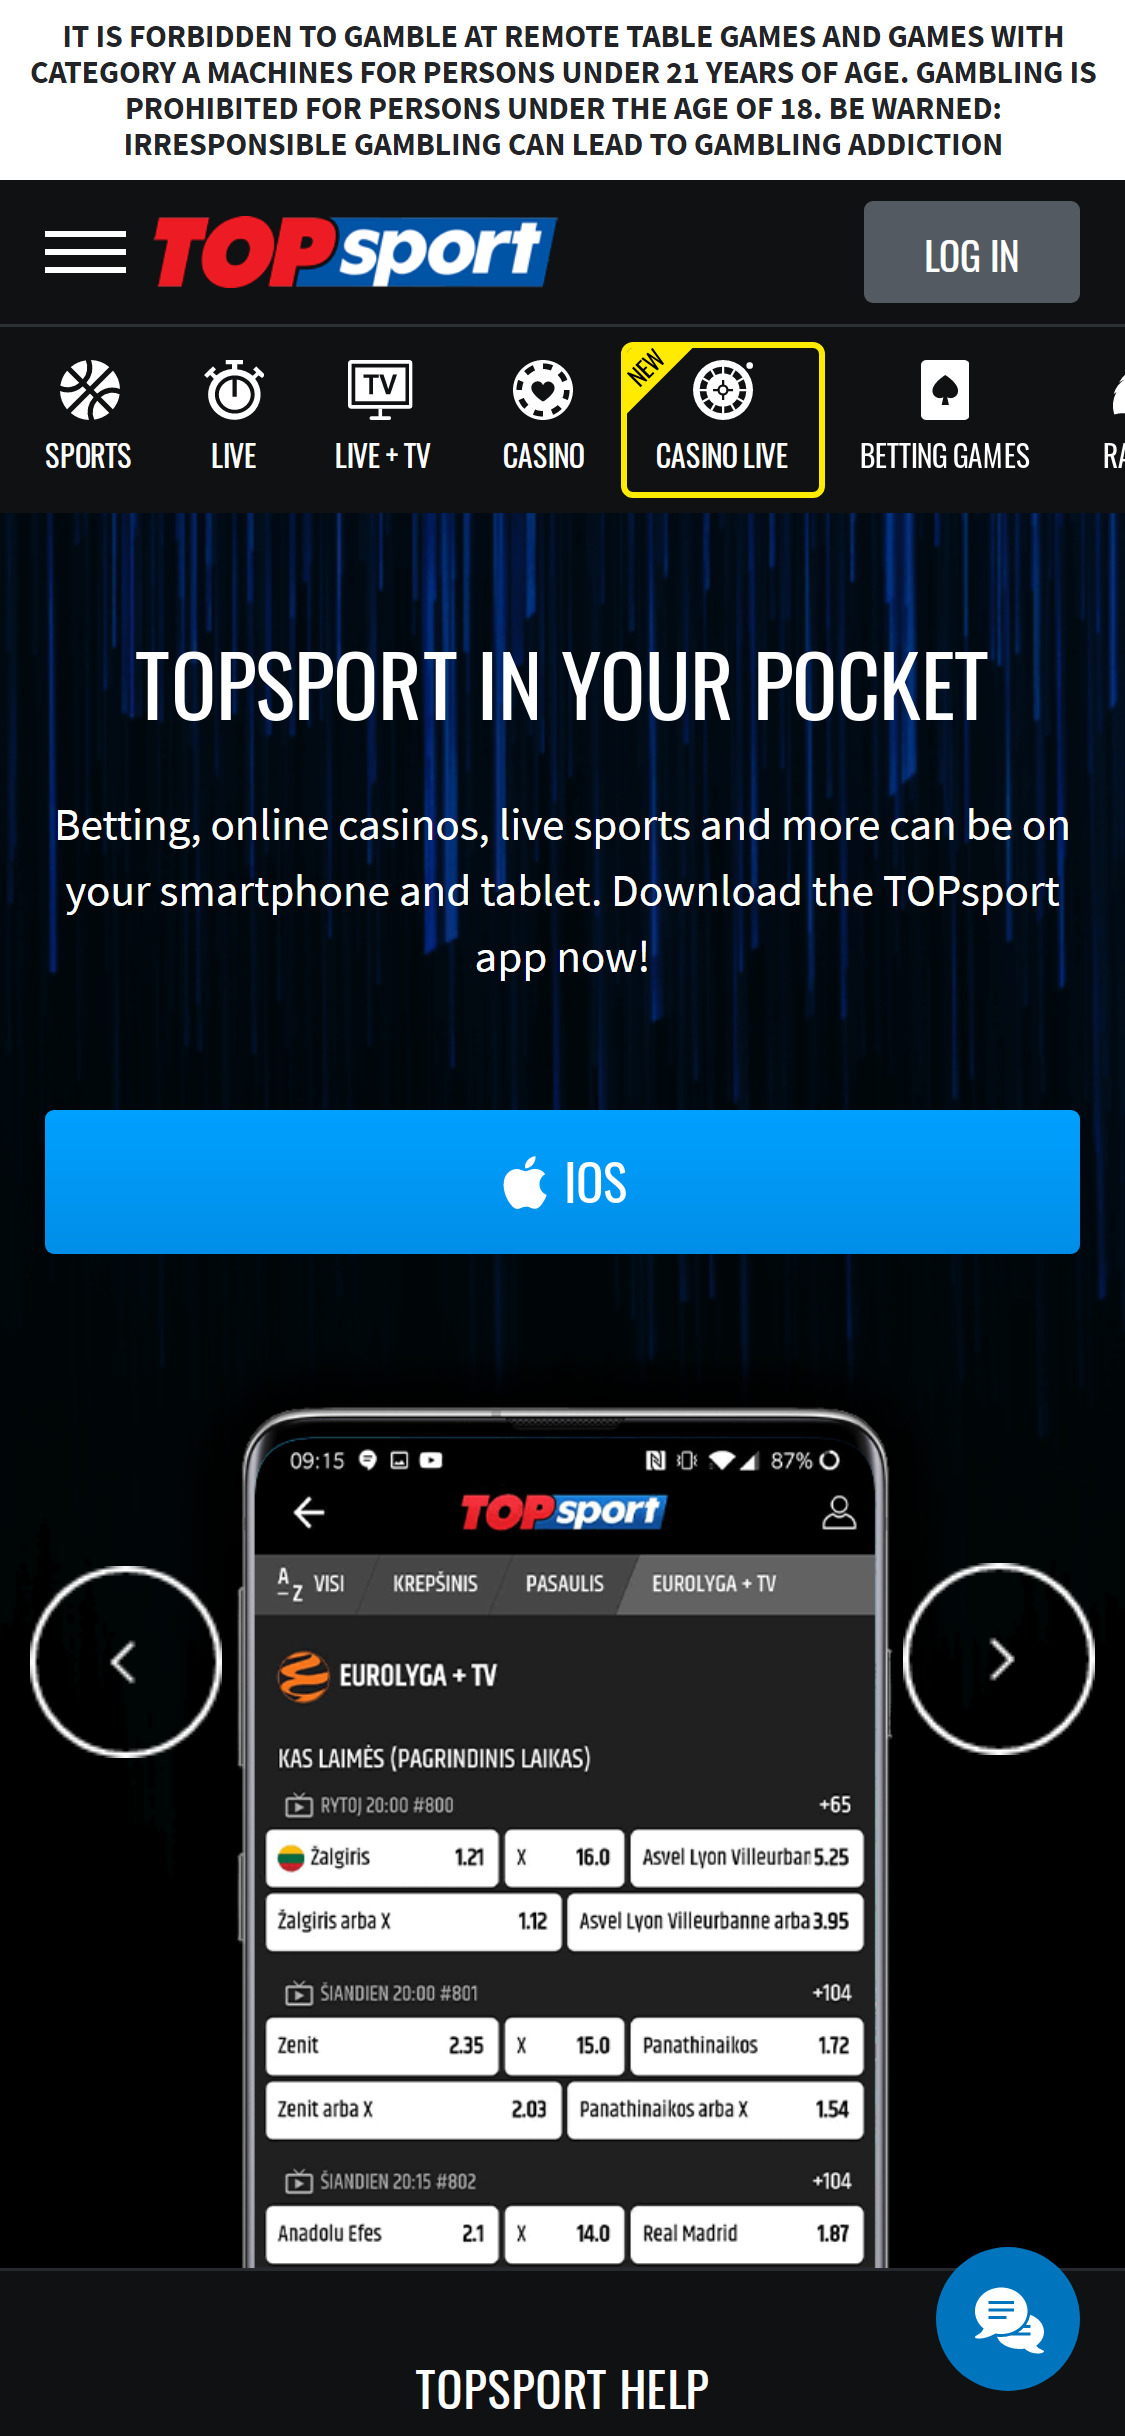 Top Sport Casino Latvia Mobile App Review